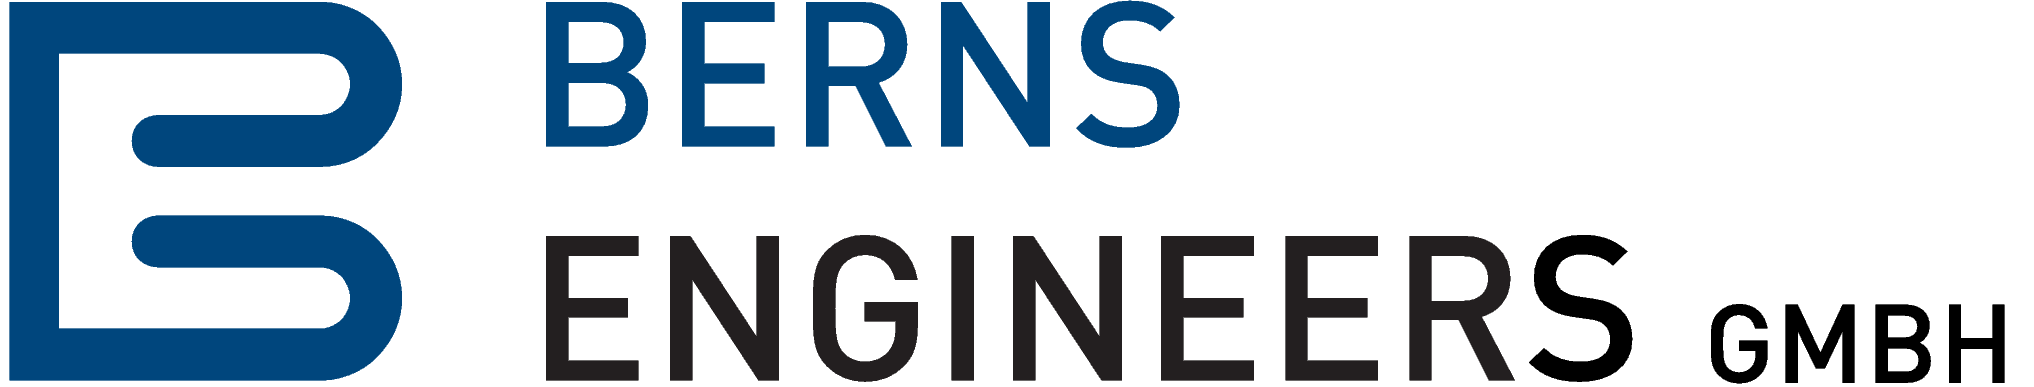 Logo der BERNS Engineers GmbH